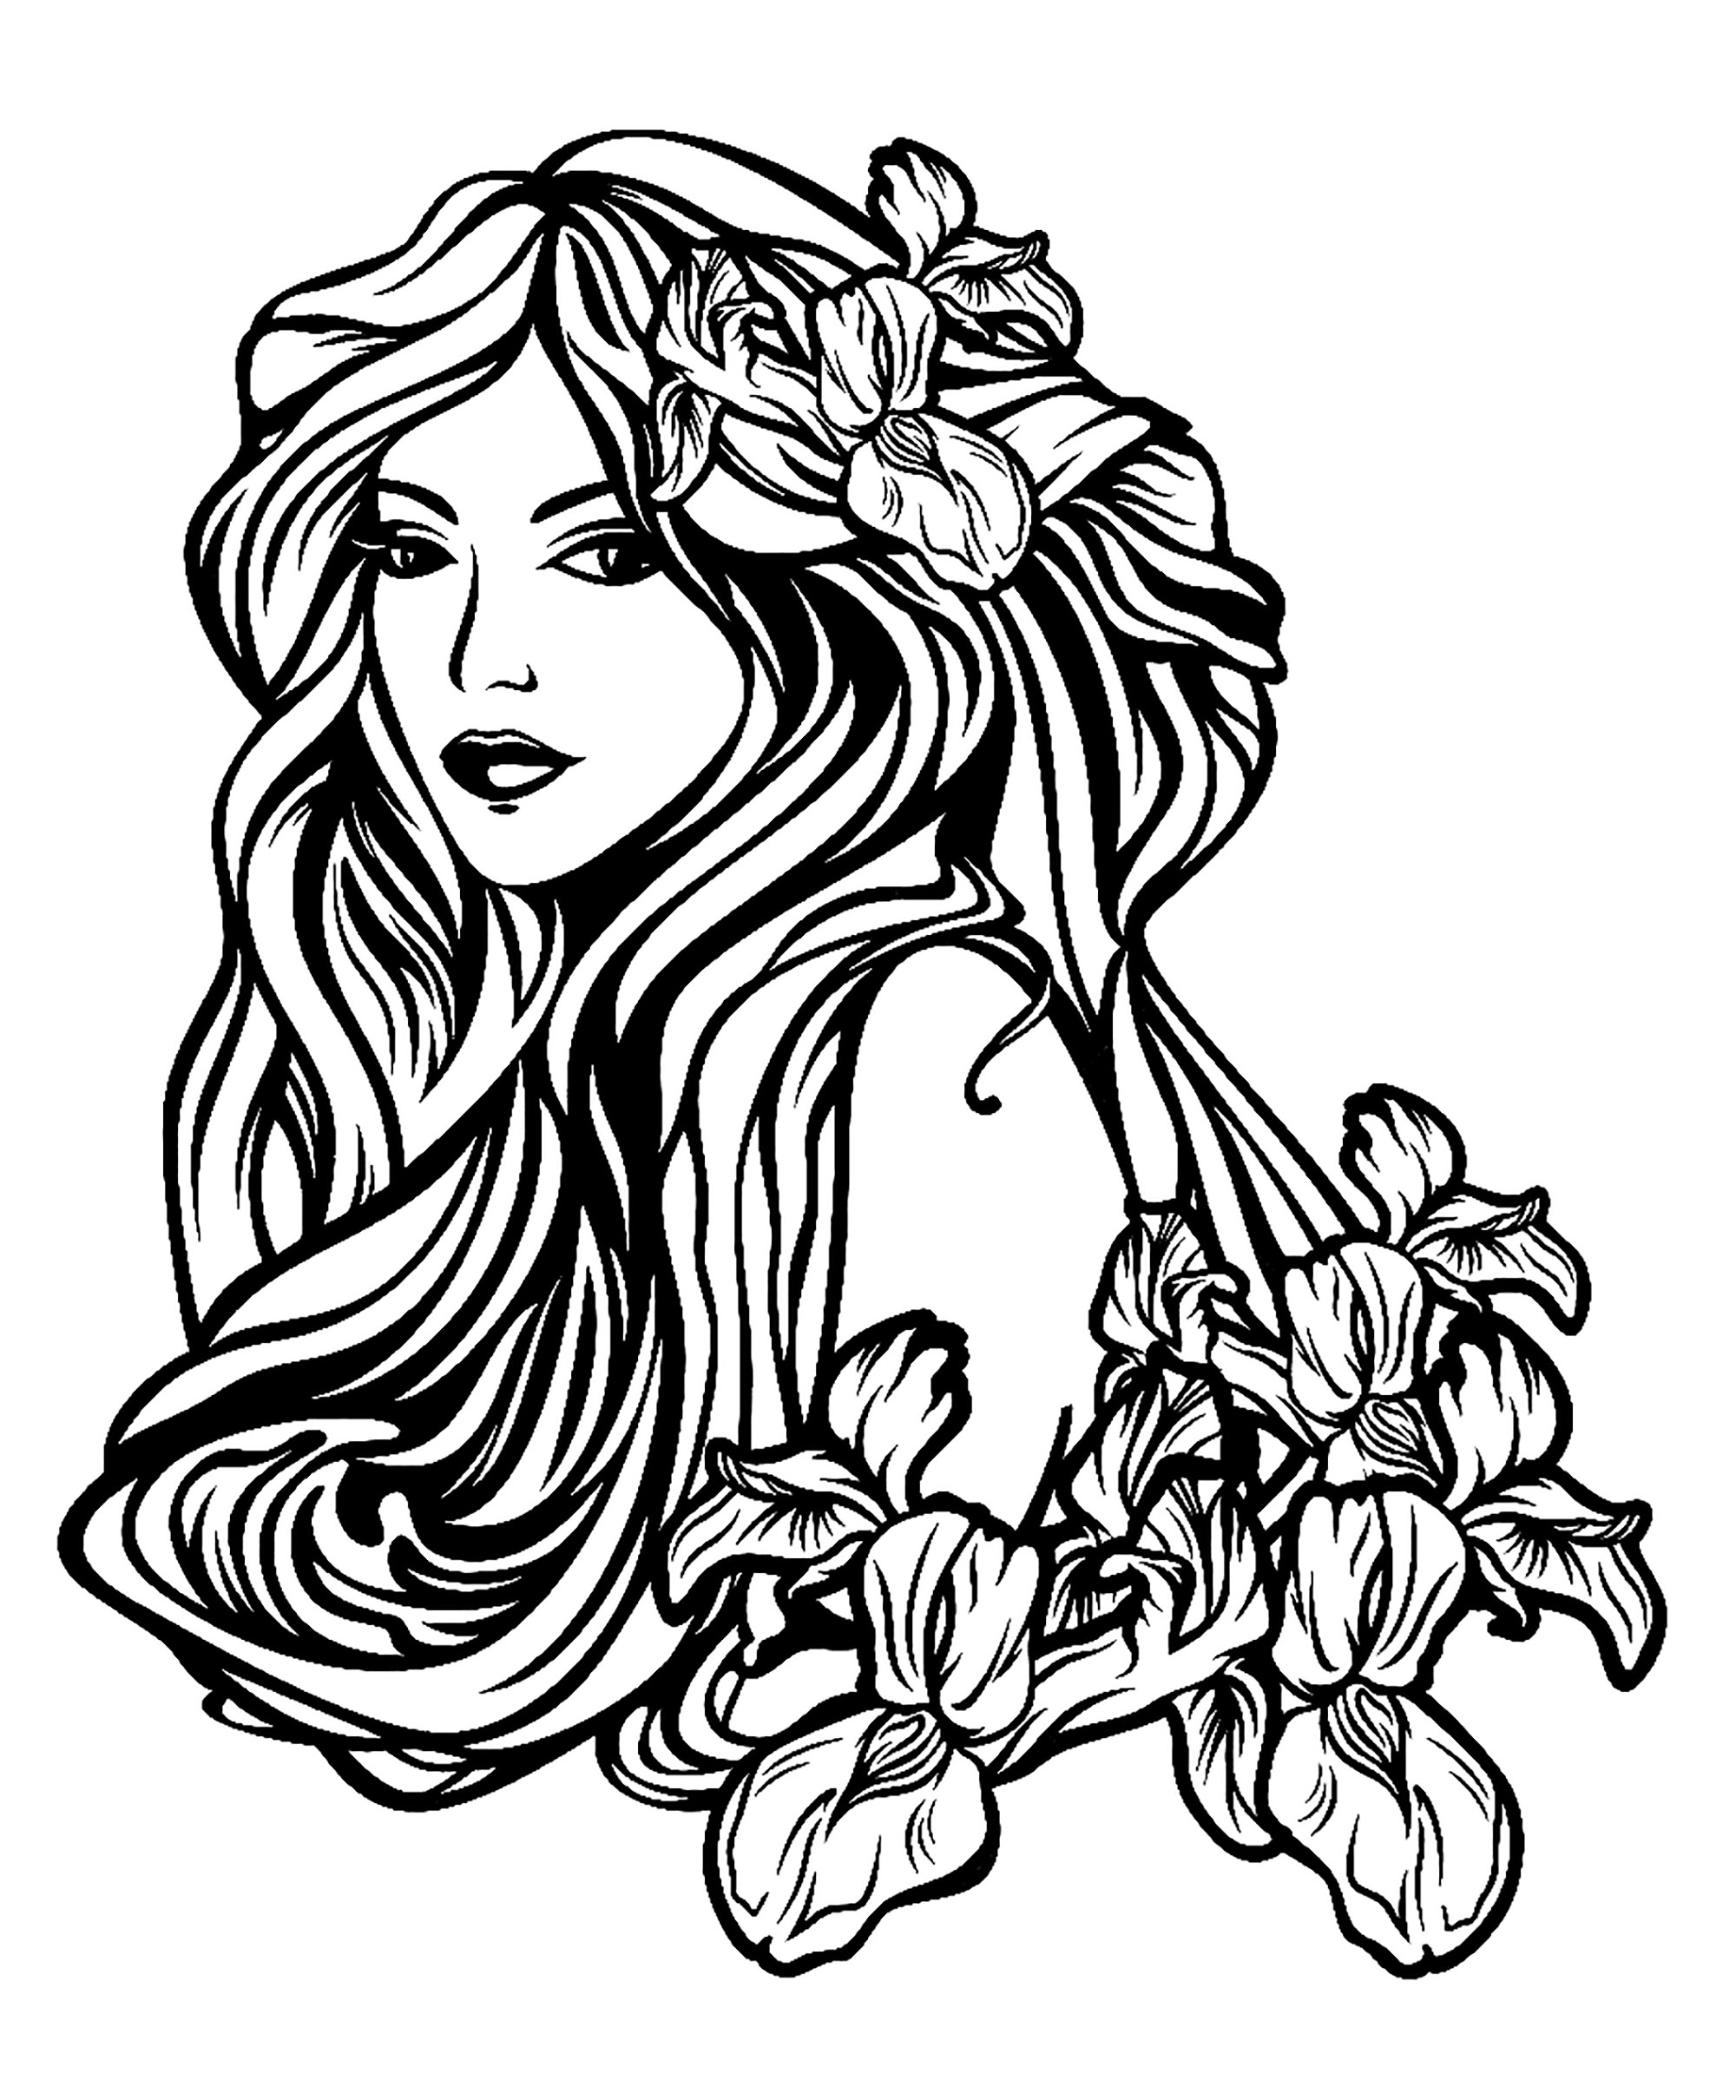 Hermosa mujer con el pelo largo entre flores de iris - estilo Art nouveau, perfecto para un tatuaje, Artista : Svetlana Alyuk   Origen : 123rf